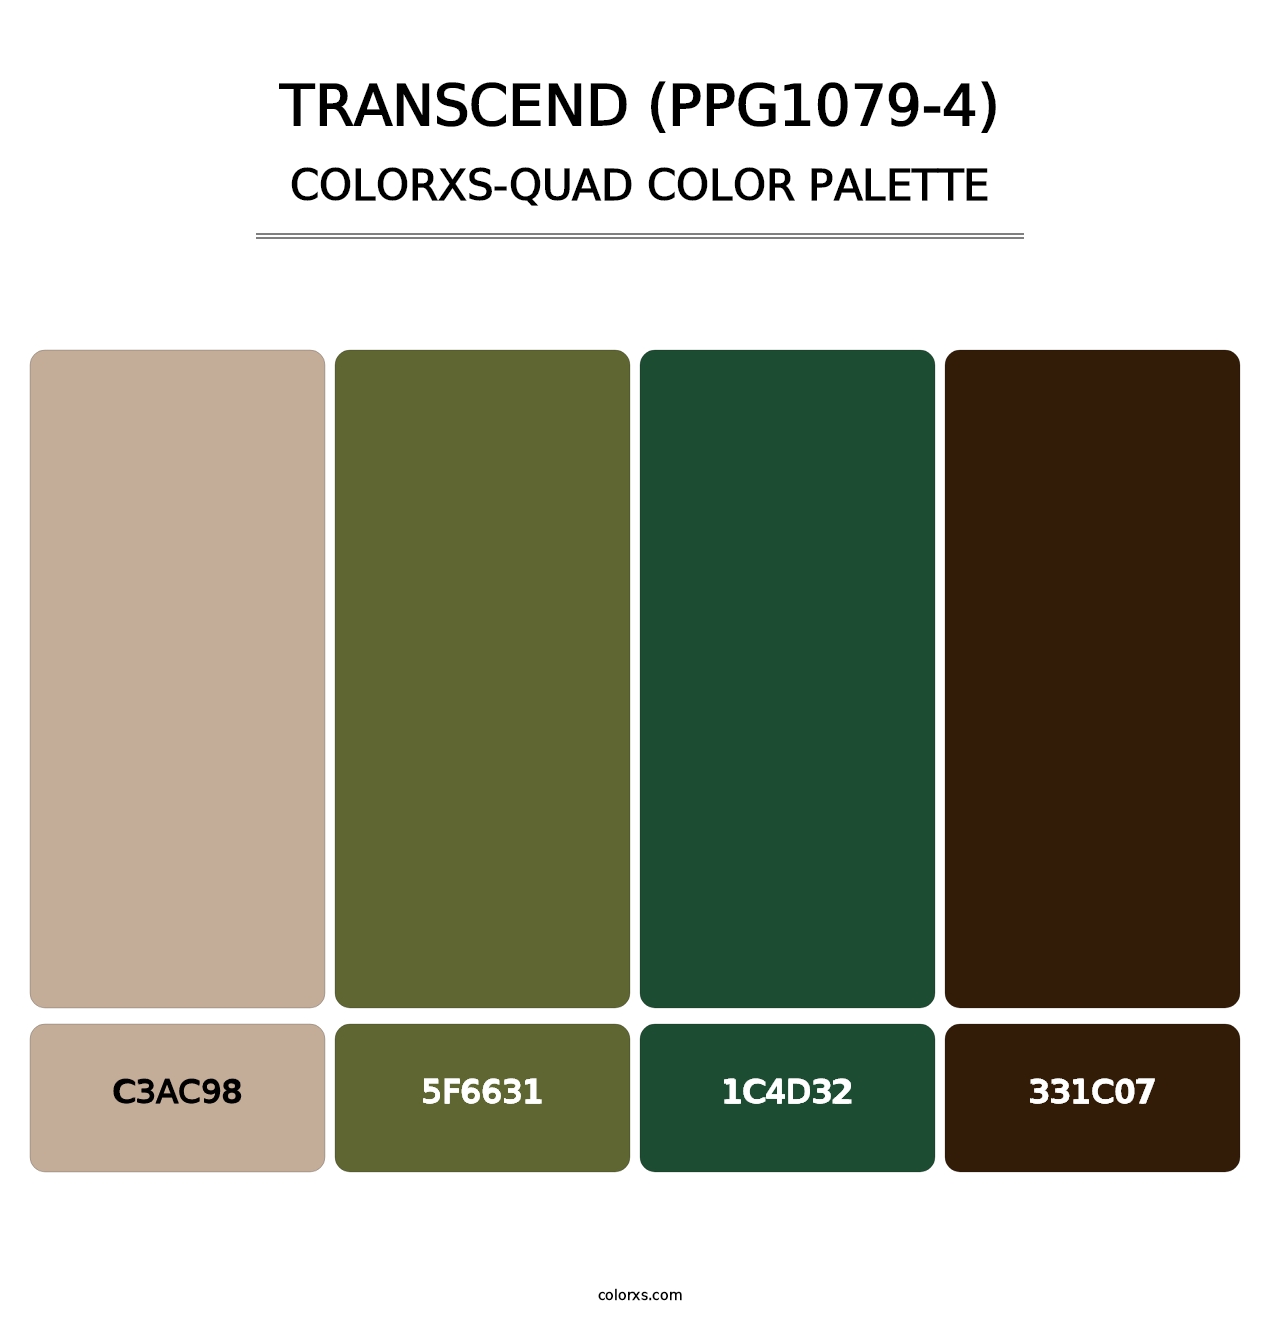 Transcend (PPG1079-4) - Colorxs Quad Palette